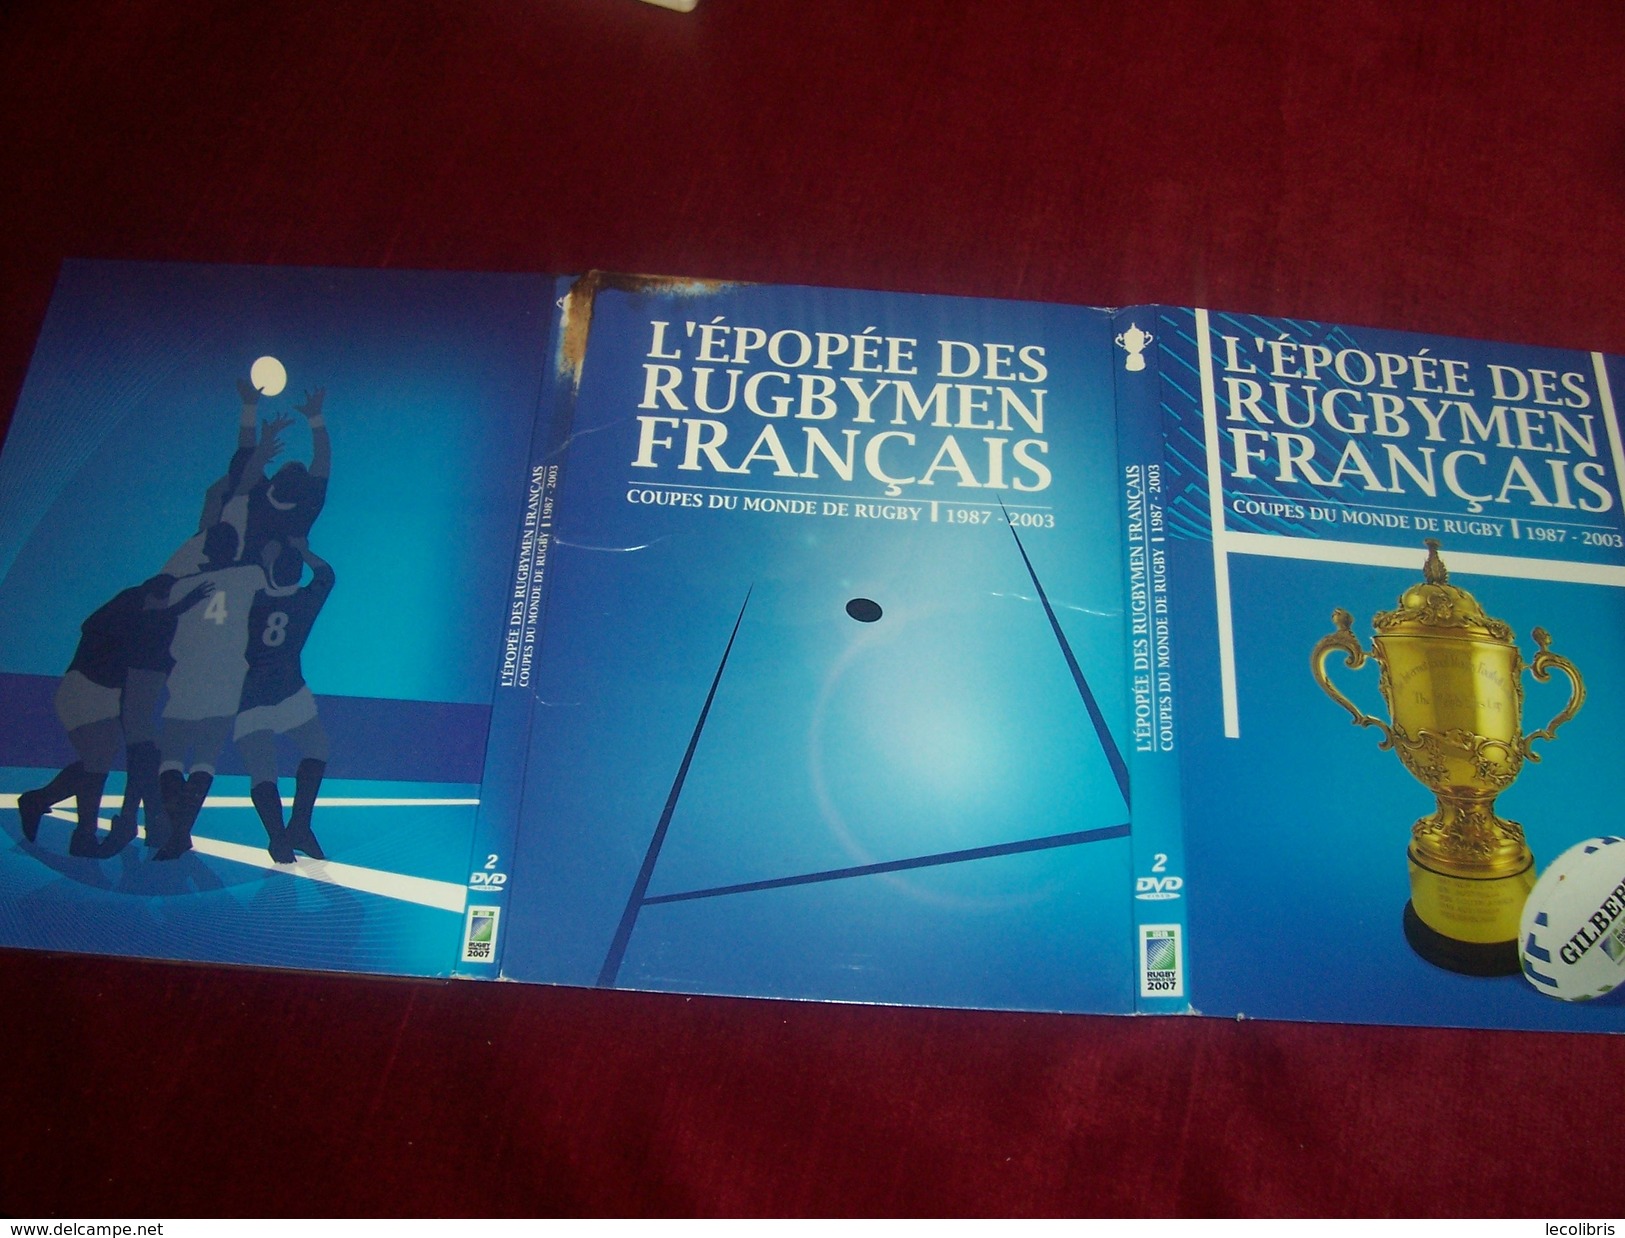 L'EPOPEE DES RUGBYMEN FRANCAIS   1987 / 2003   DOUBLE DVD